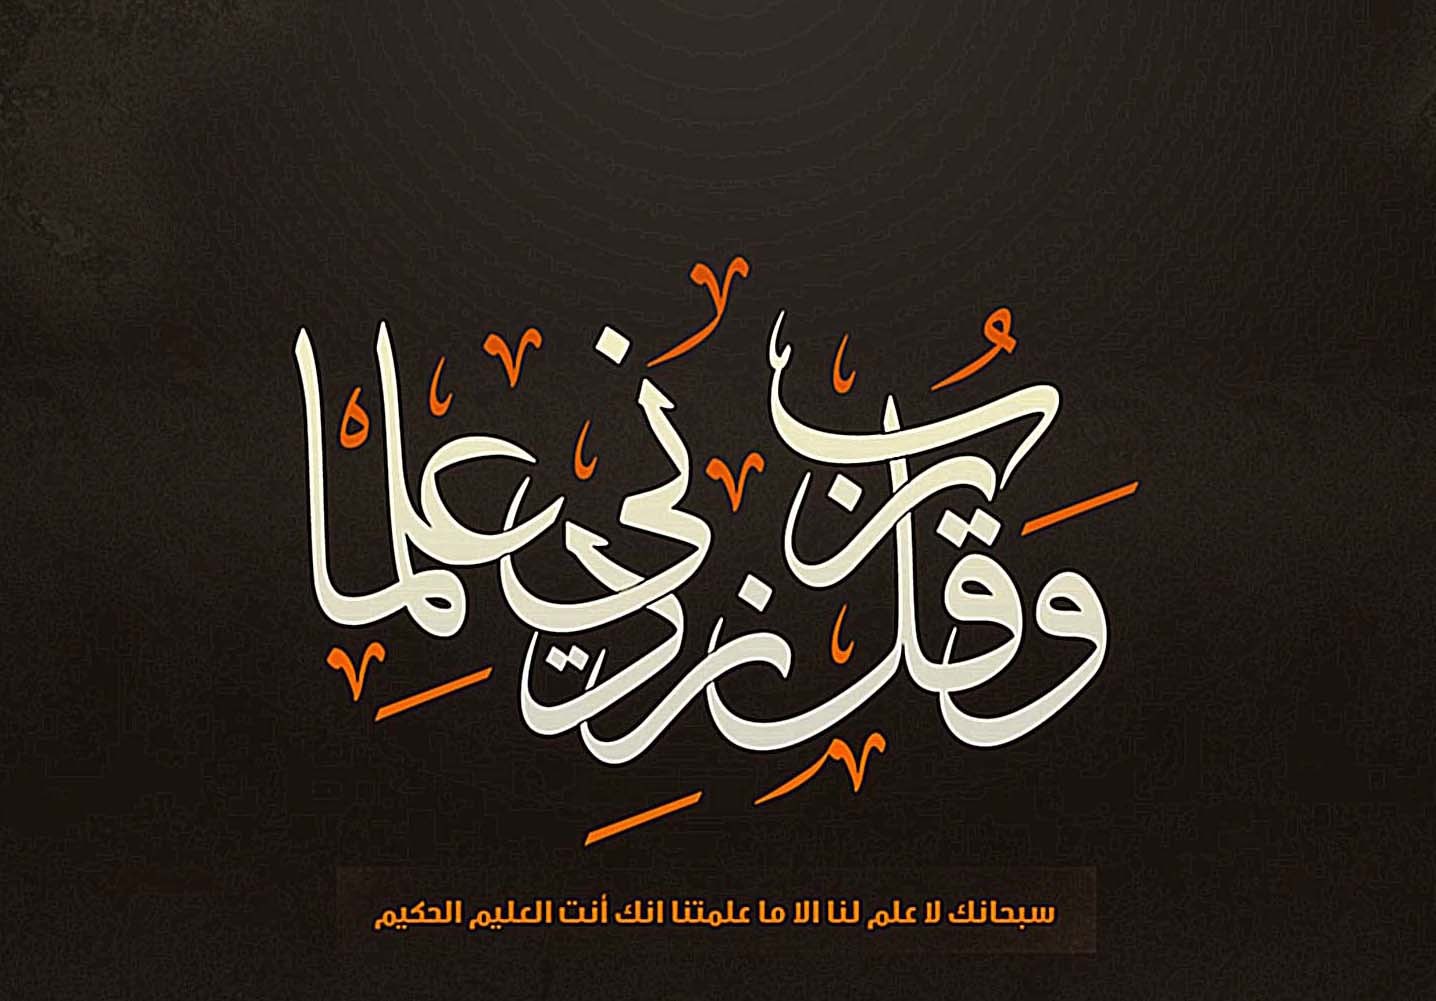 quranic verse in Arabic script